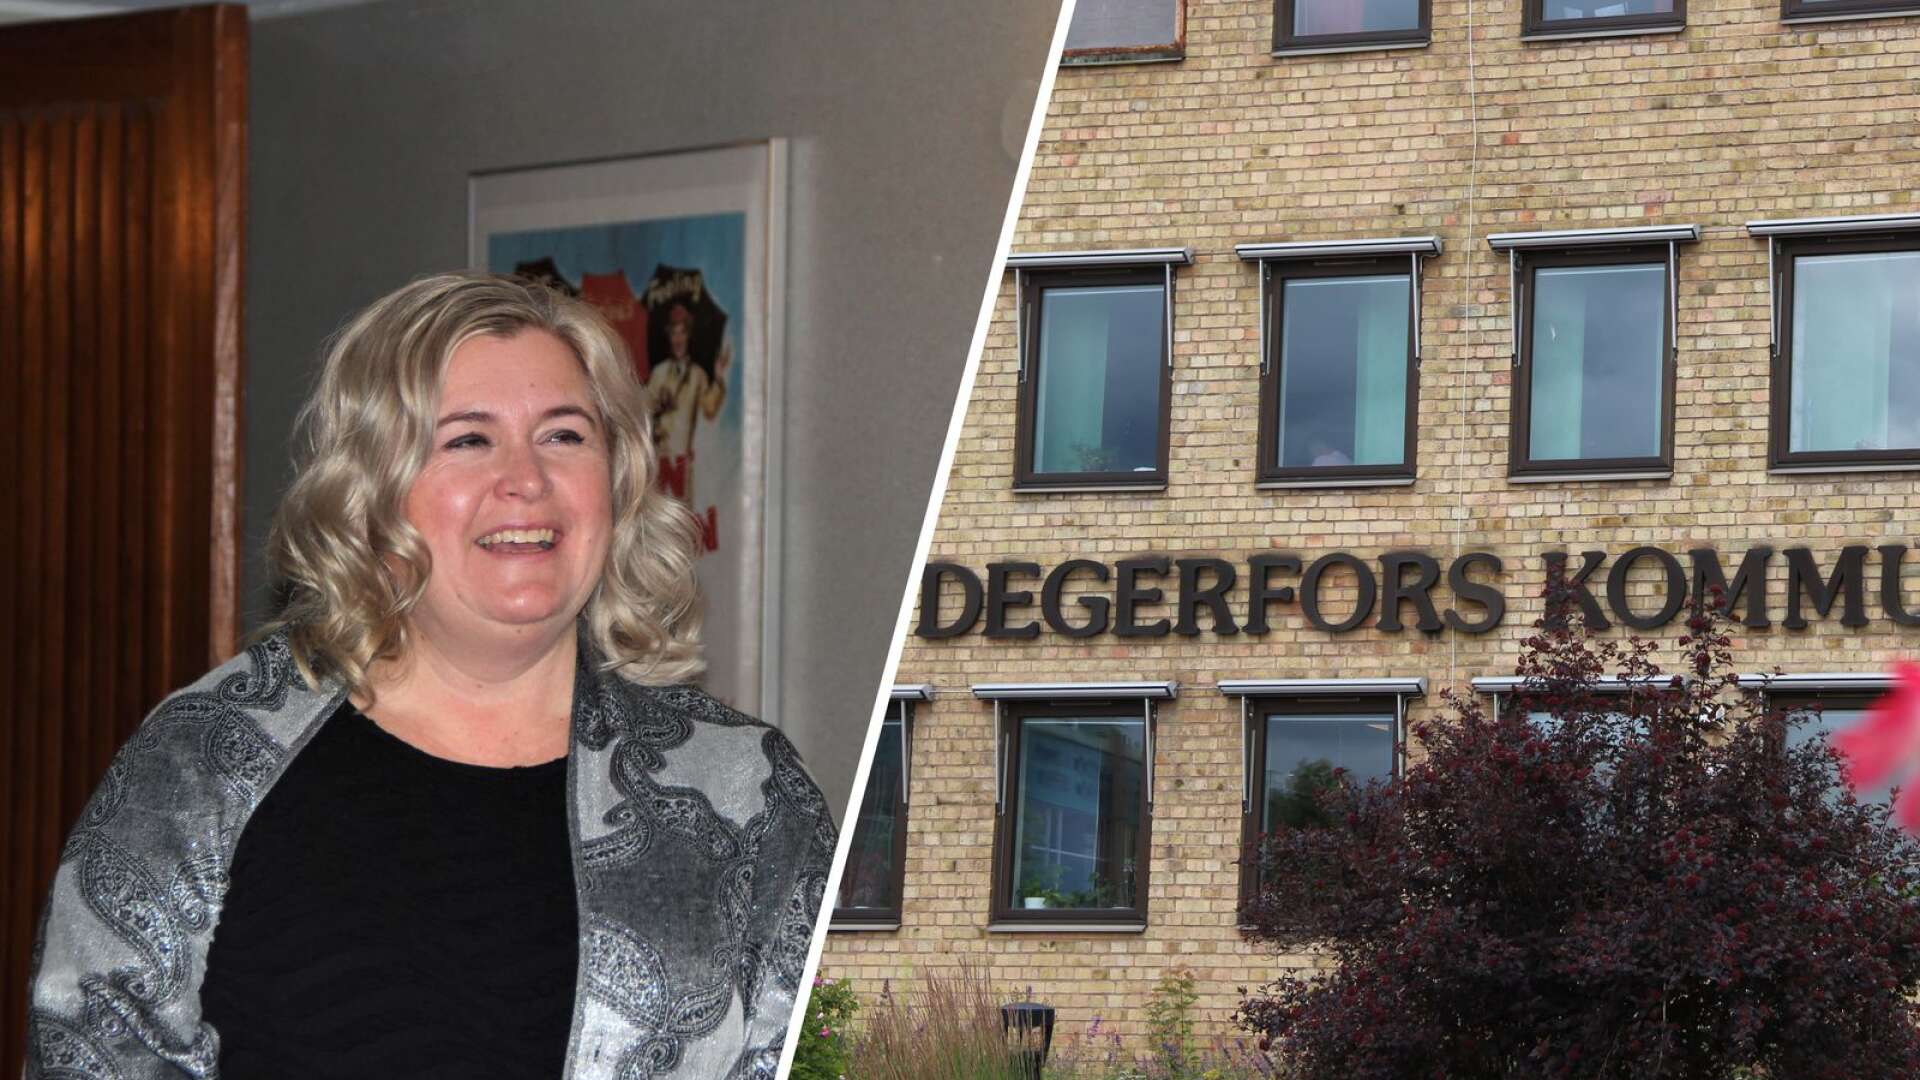 Kommundirektör Teresa Zetterblad sade upp sig från tjänsten i augusti i år. Först i januari 2024 räknar man med att ha en ny direktör på plats i Degerfors kommun.